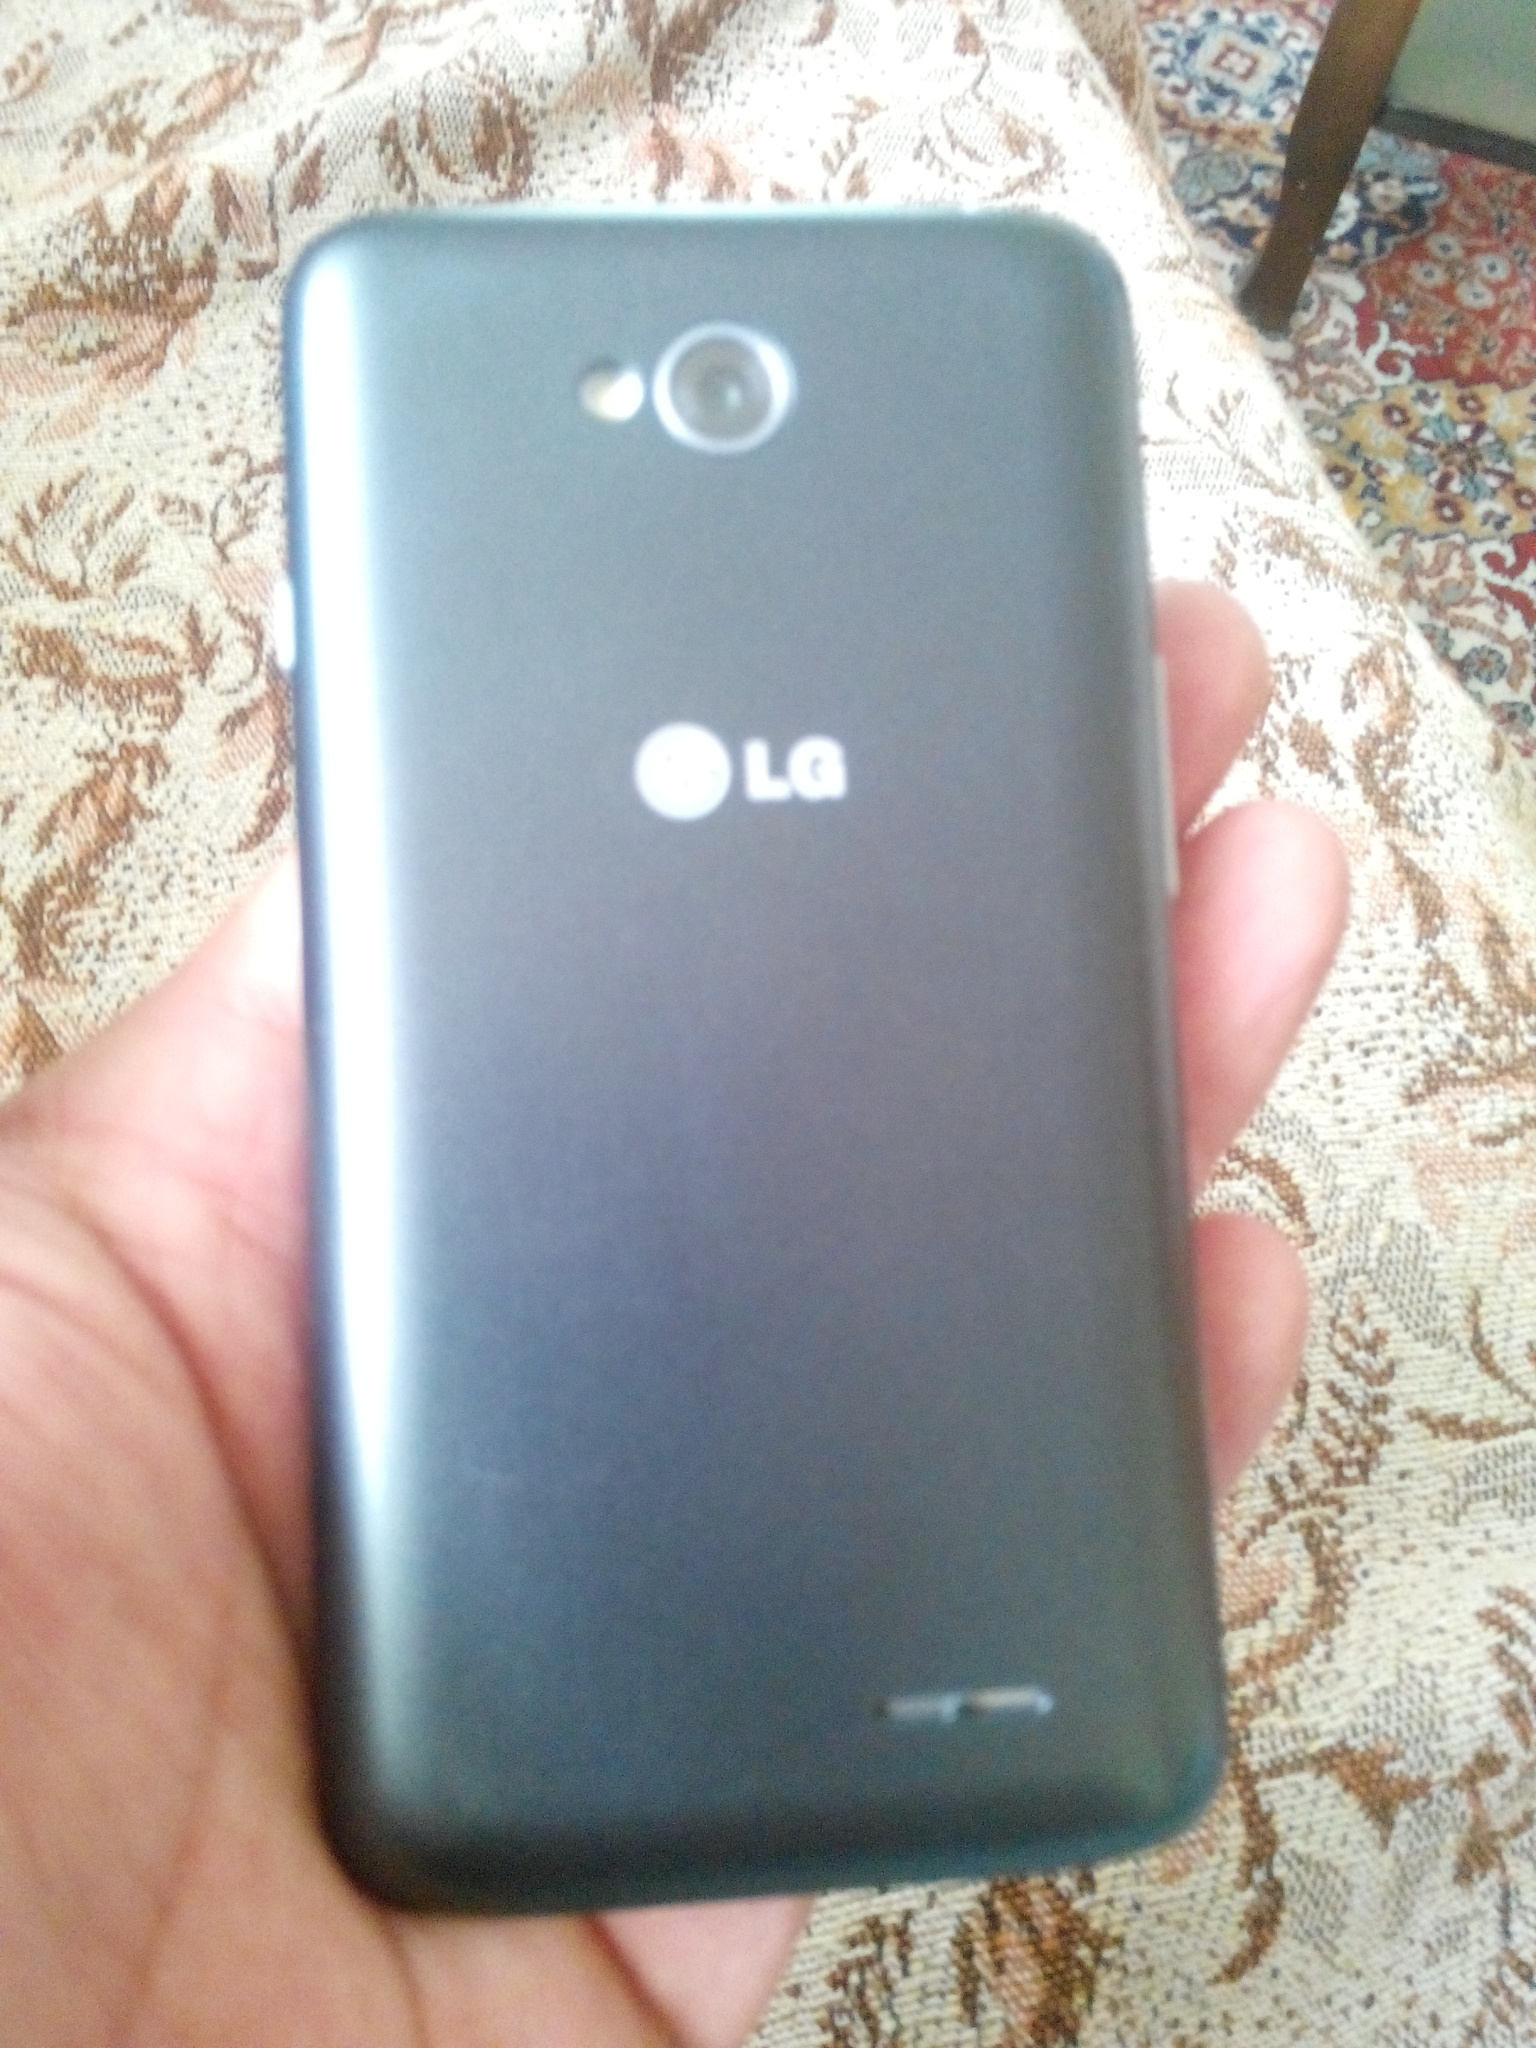  LG L70 takaslık sıfır ayarında.